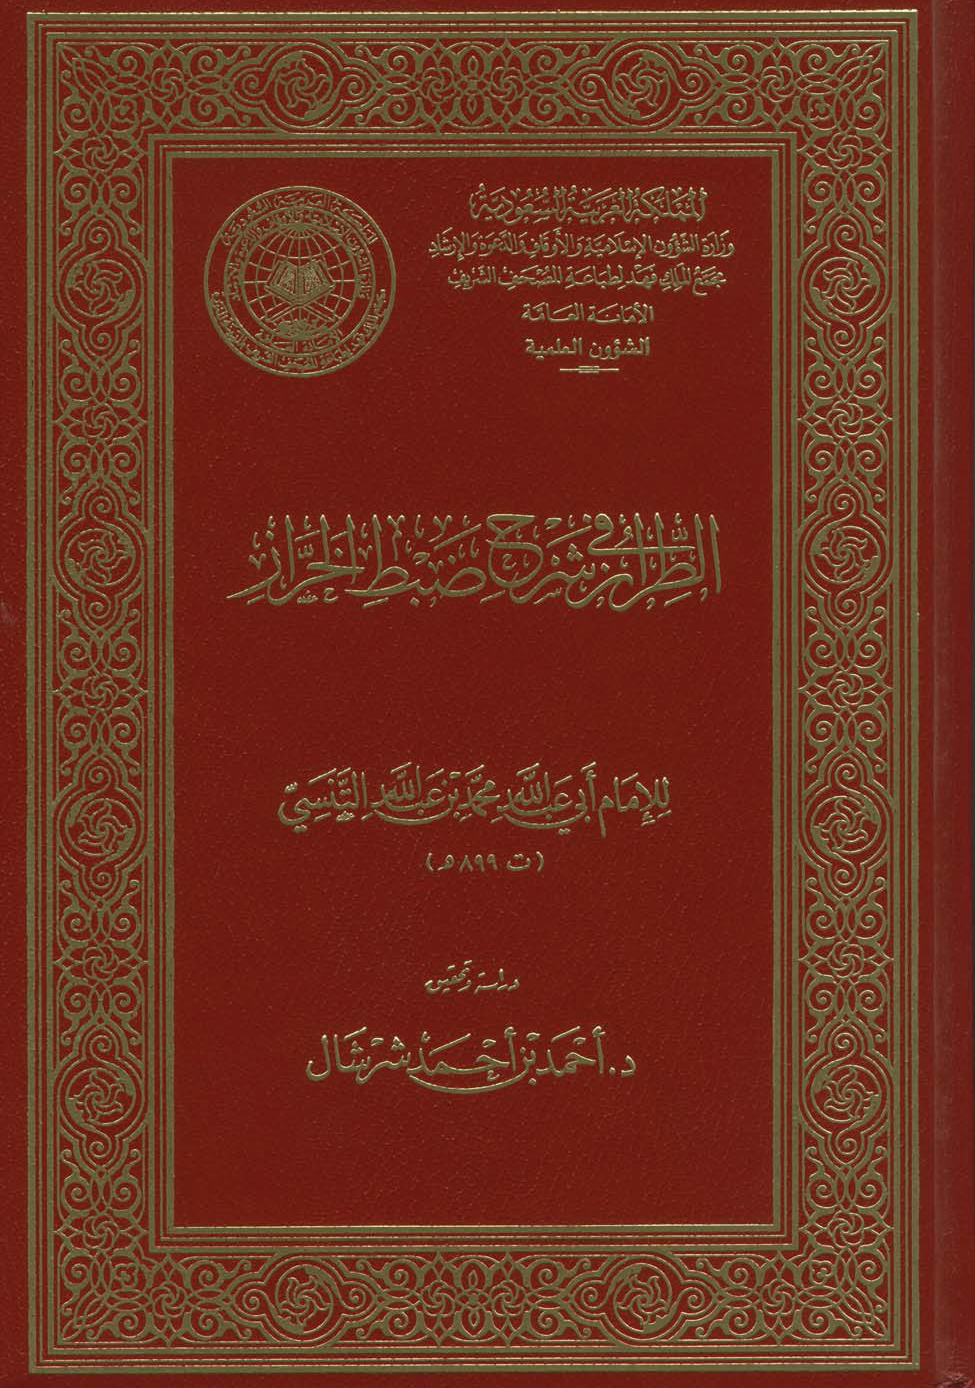 تحميل كتاب الطراز في شرح ضبط الخراز للمؤلف: الإمام أبو عبد الله محمد بن عبد الجليل التنسي التلمساني (ت 899)